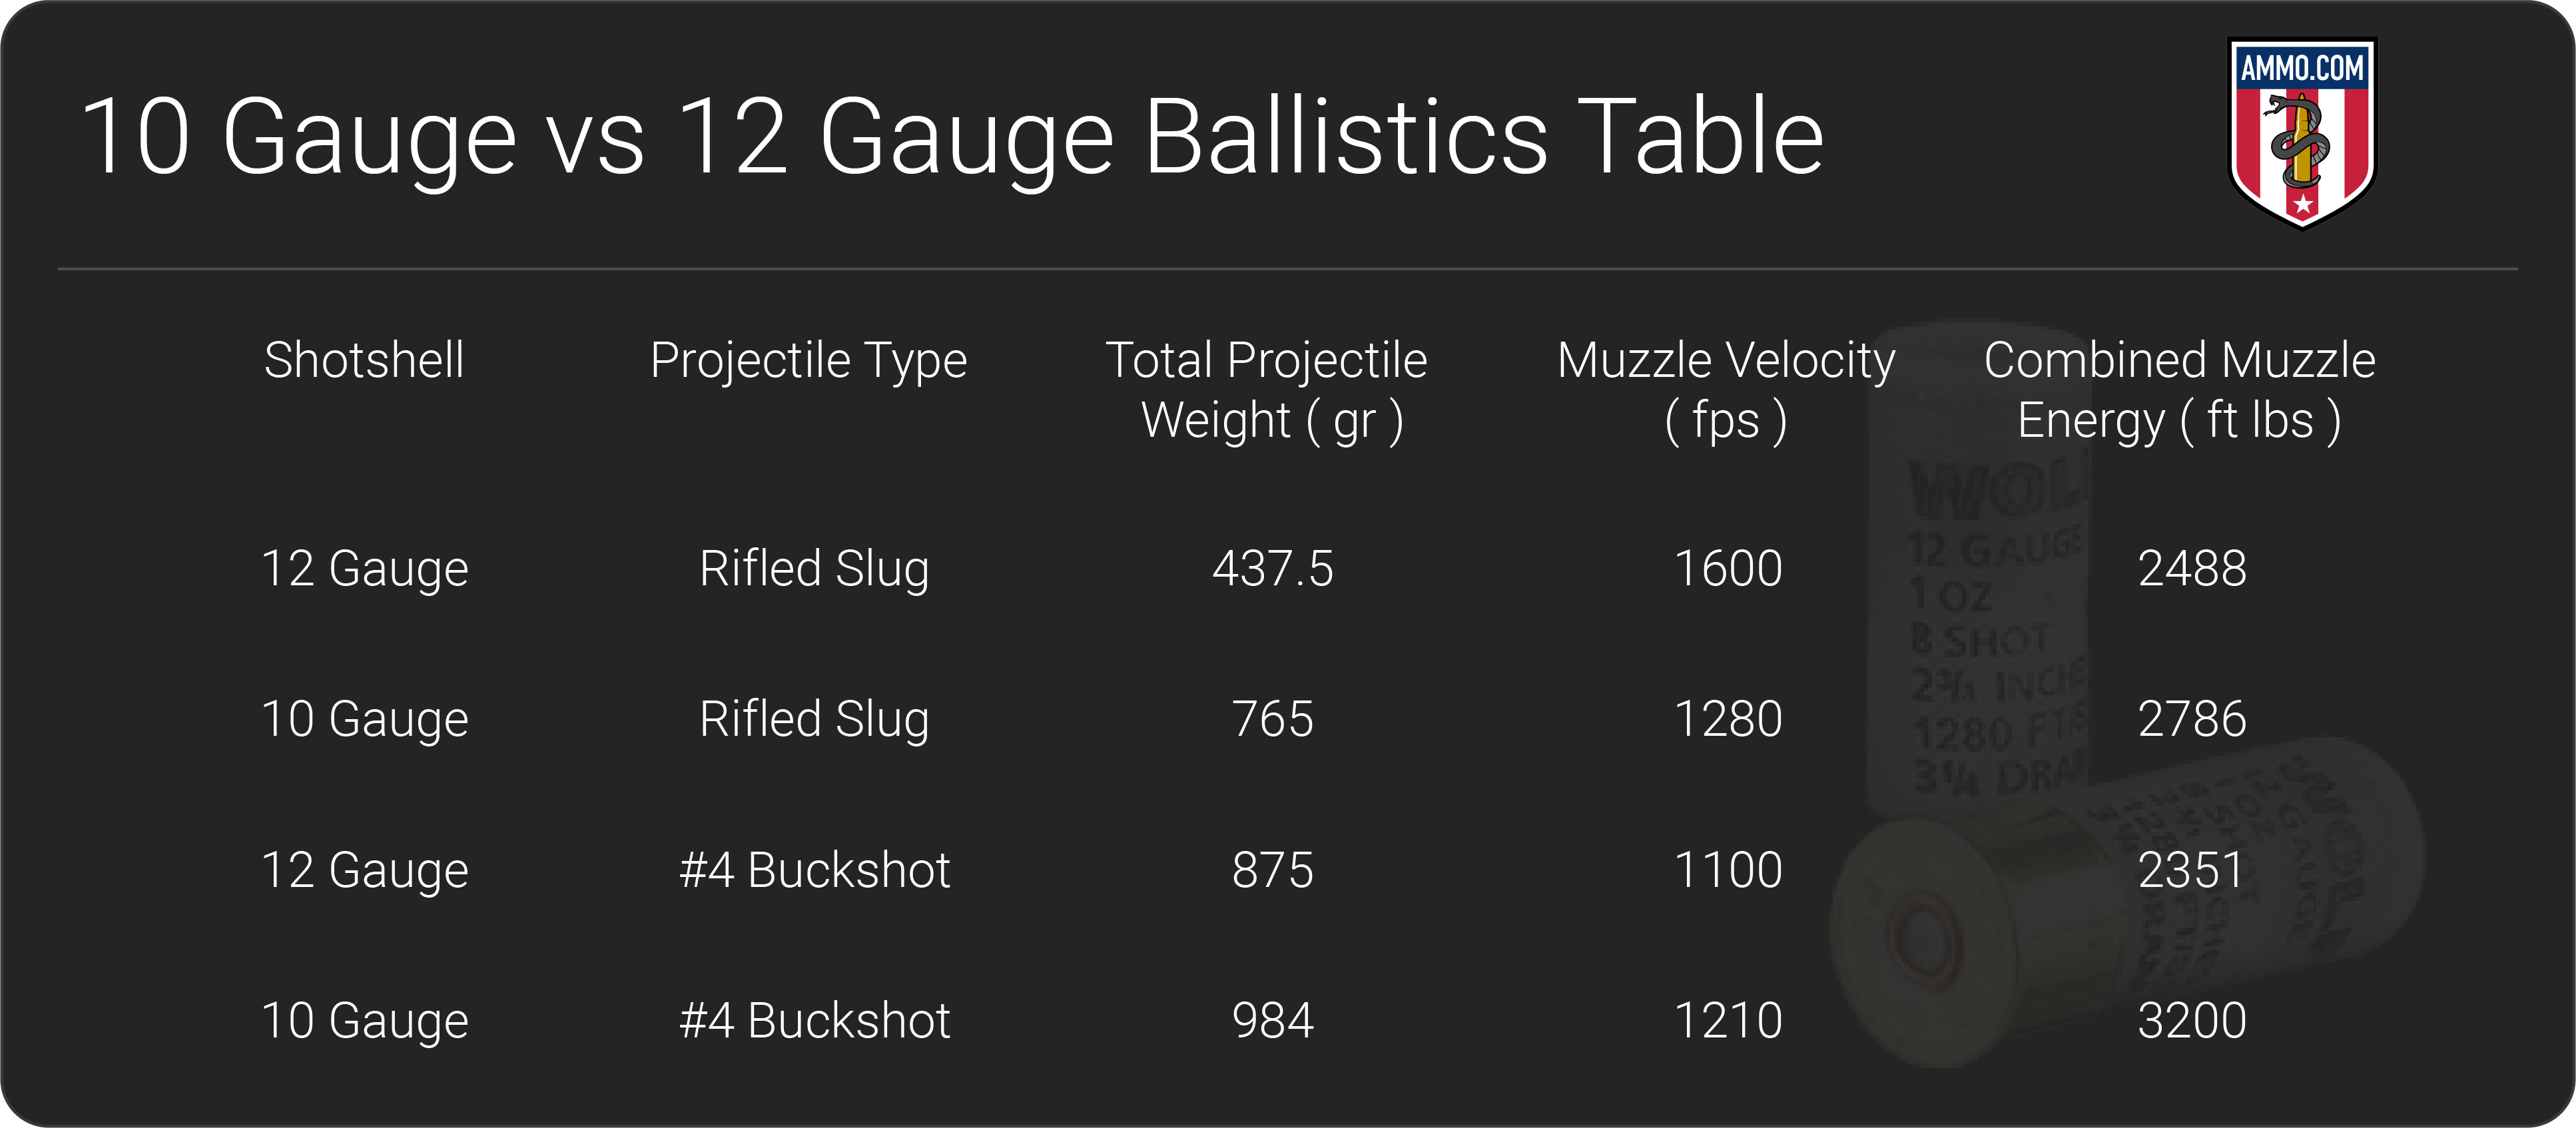 10 Gauge vs 12 Gauge ballistics table